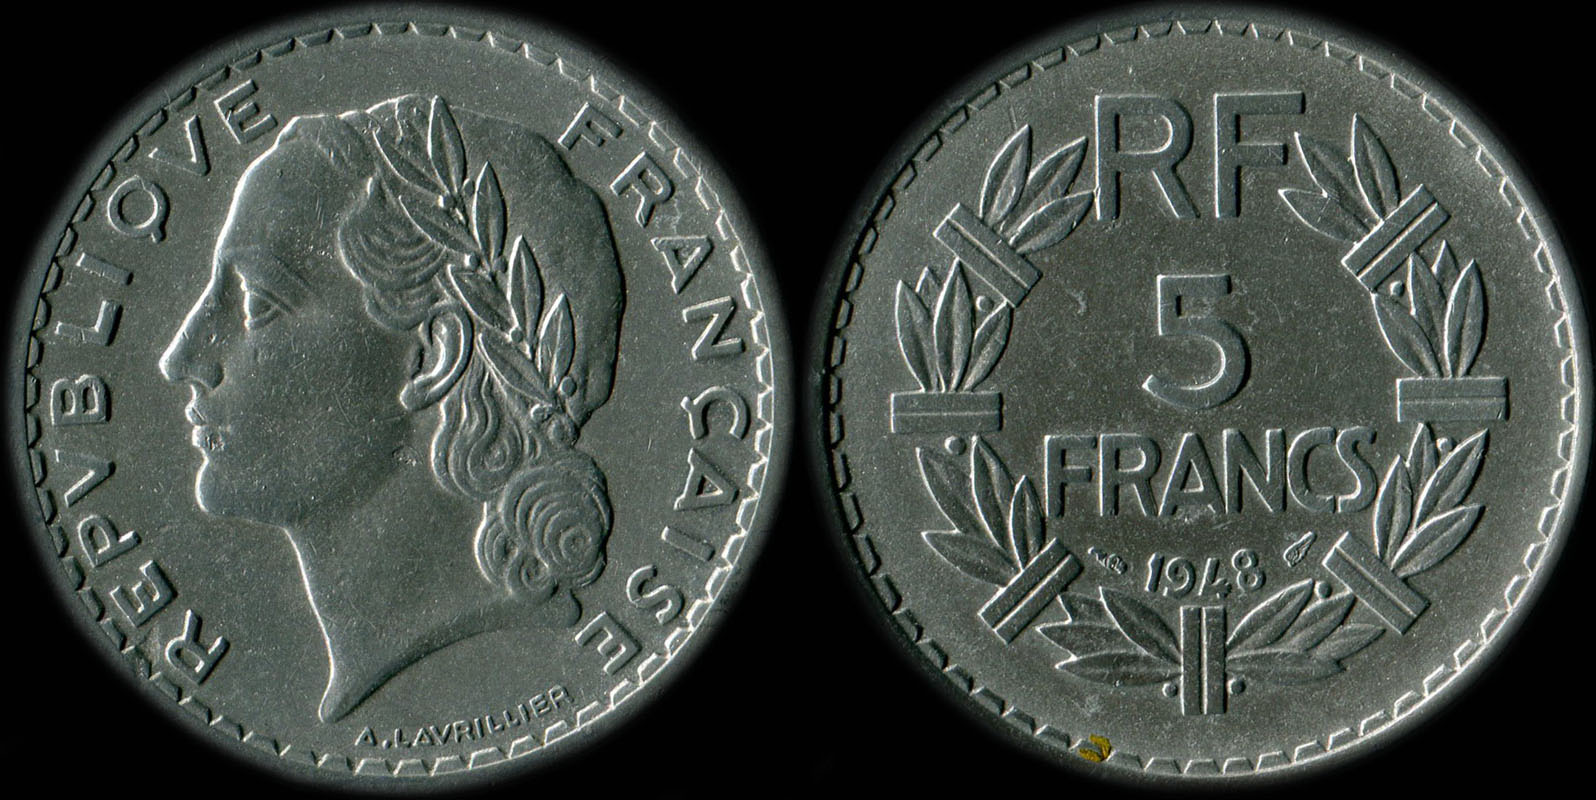 Pice de 5 francs Lavrillier 1948 aluminium avec 9 ouvert